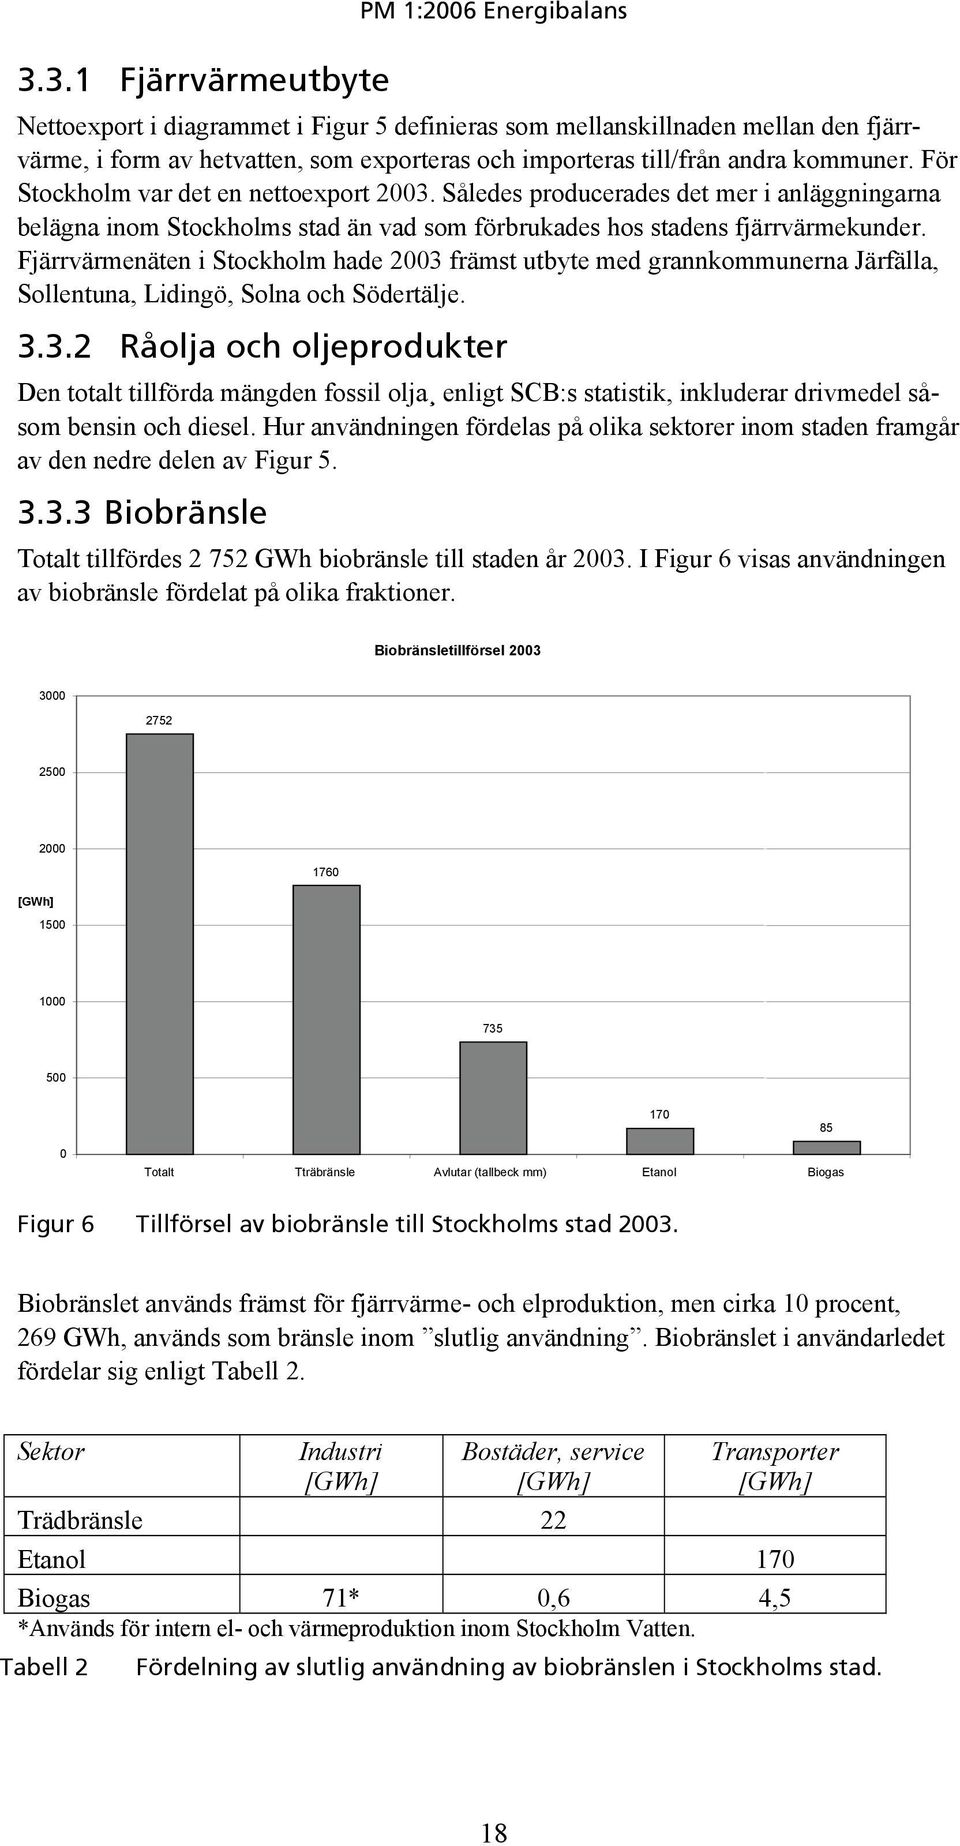 Fjärrvärmenäten i Stockholm hade 2003 främst utbyte med grannkommunerna Järfälla, Sollentuna, Lidingö, Solna och Södertälje. 3.3.2 Råolja och oljeprodukter Den totalt tillförda mängden fossil olja enligt SCB:s statistik, inkluderar drivmedel såsom bensin och diesel.